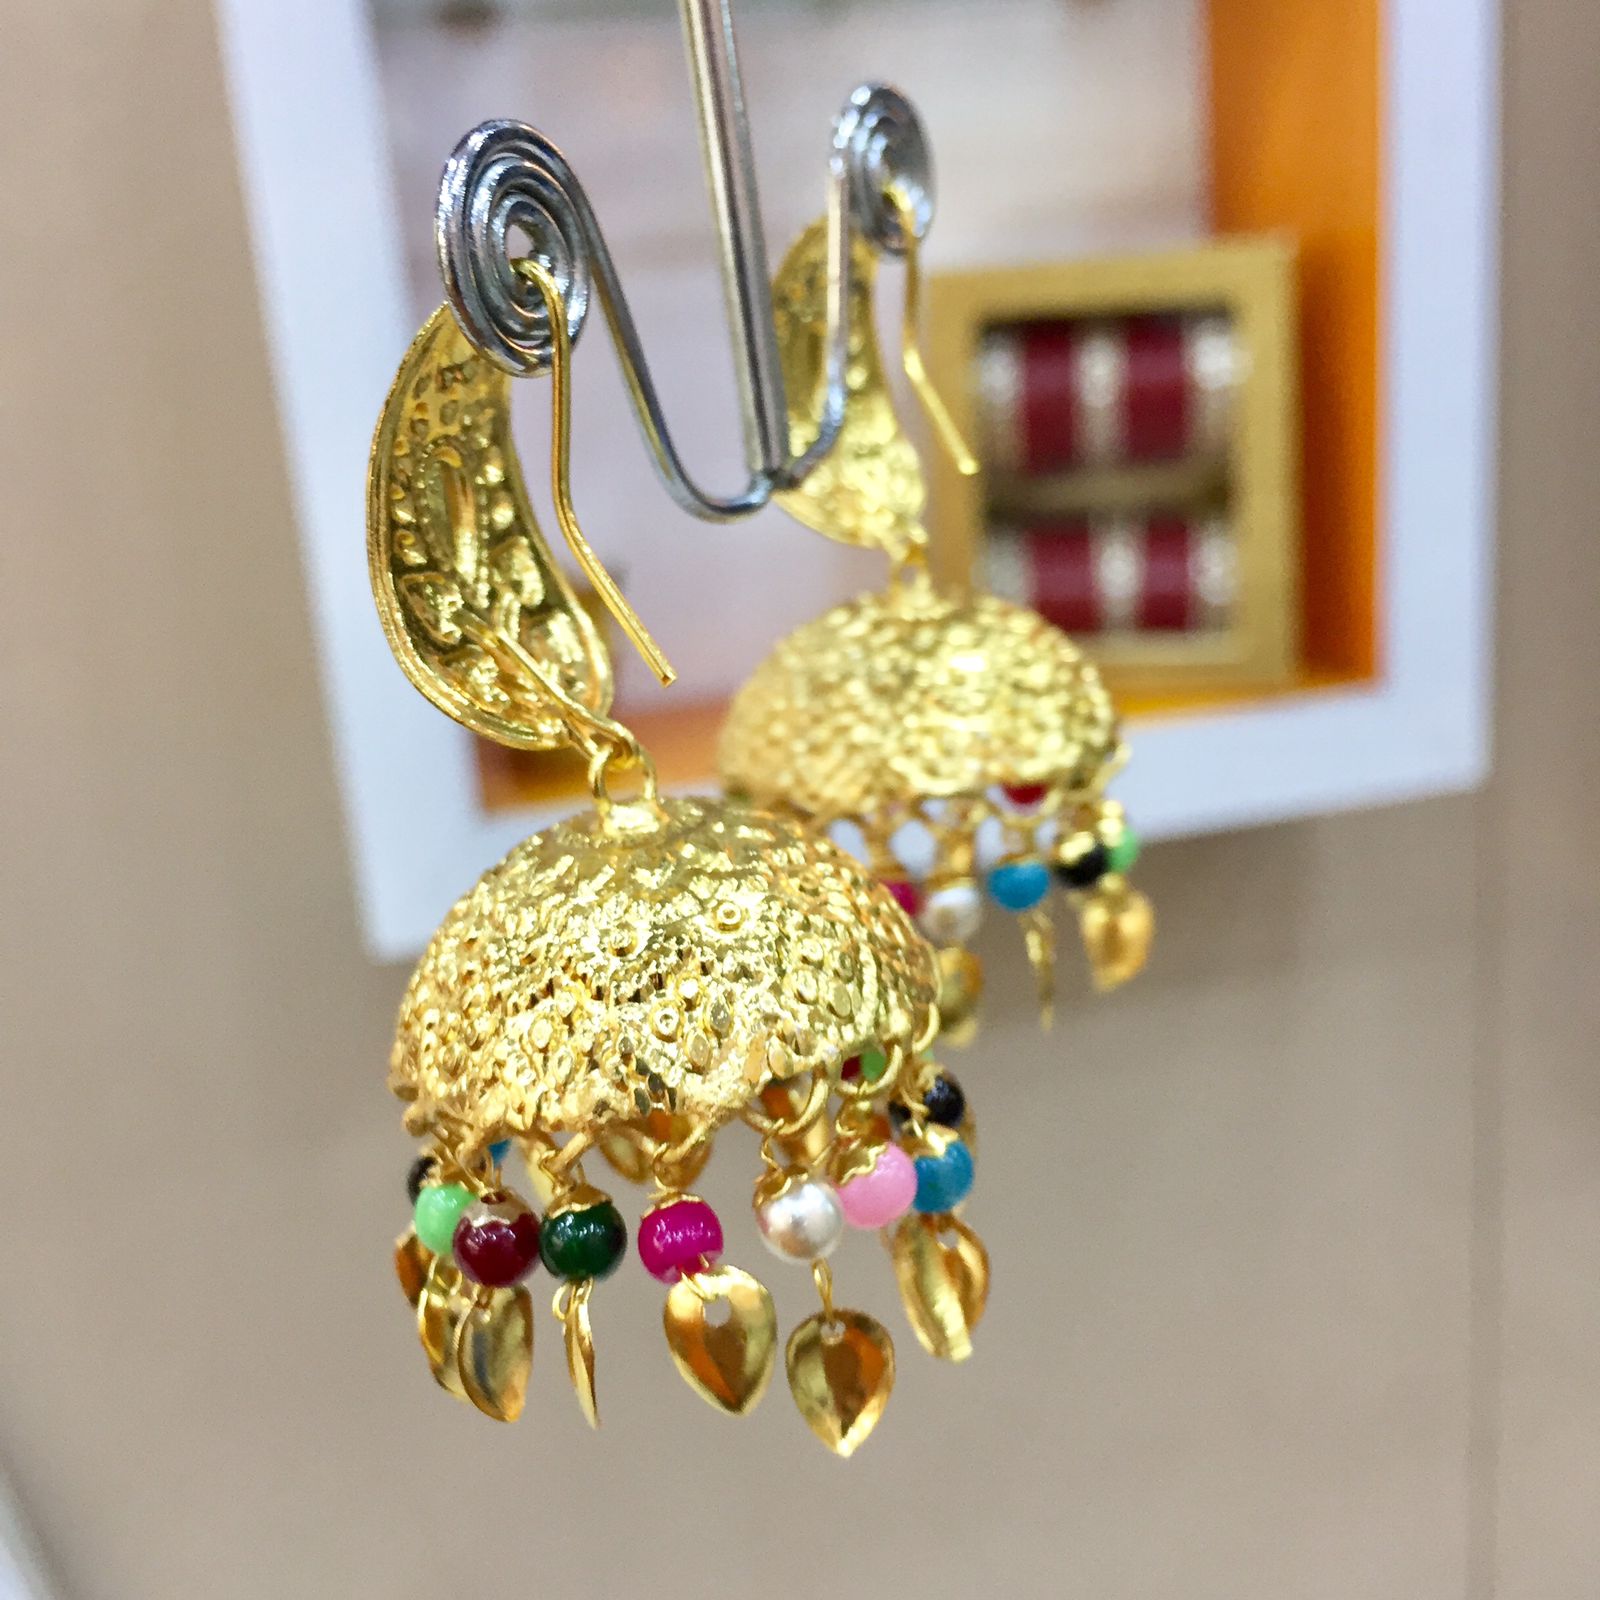 Antique earrings - Vijay & Sons